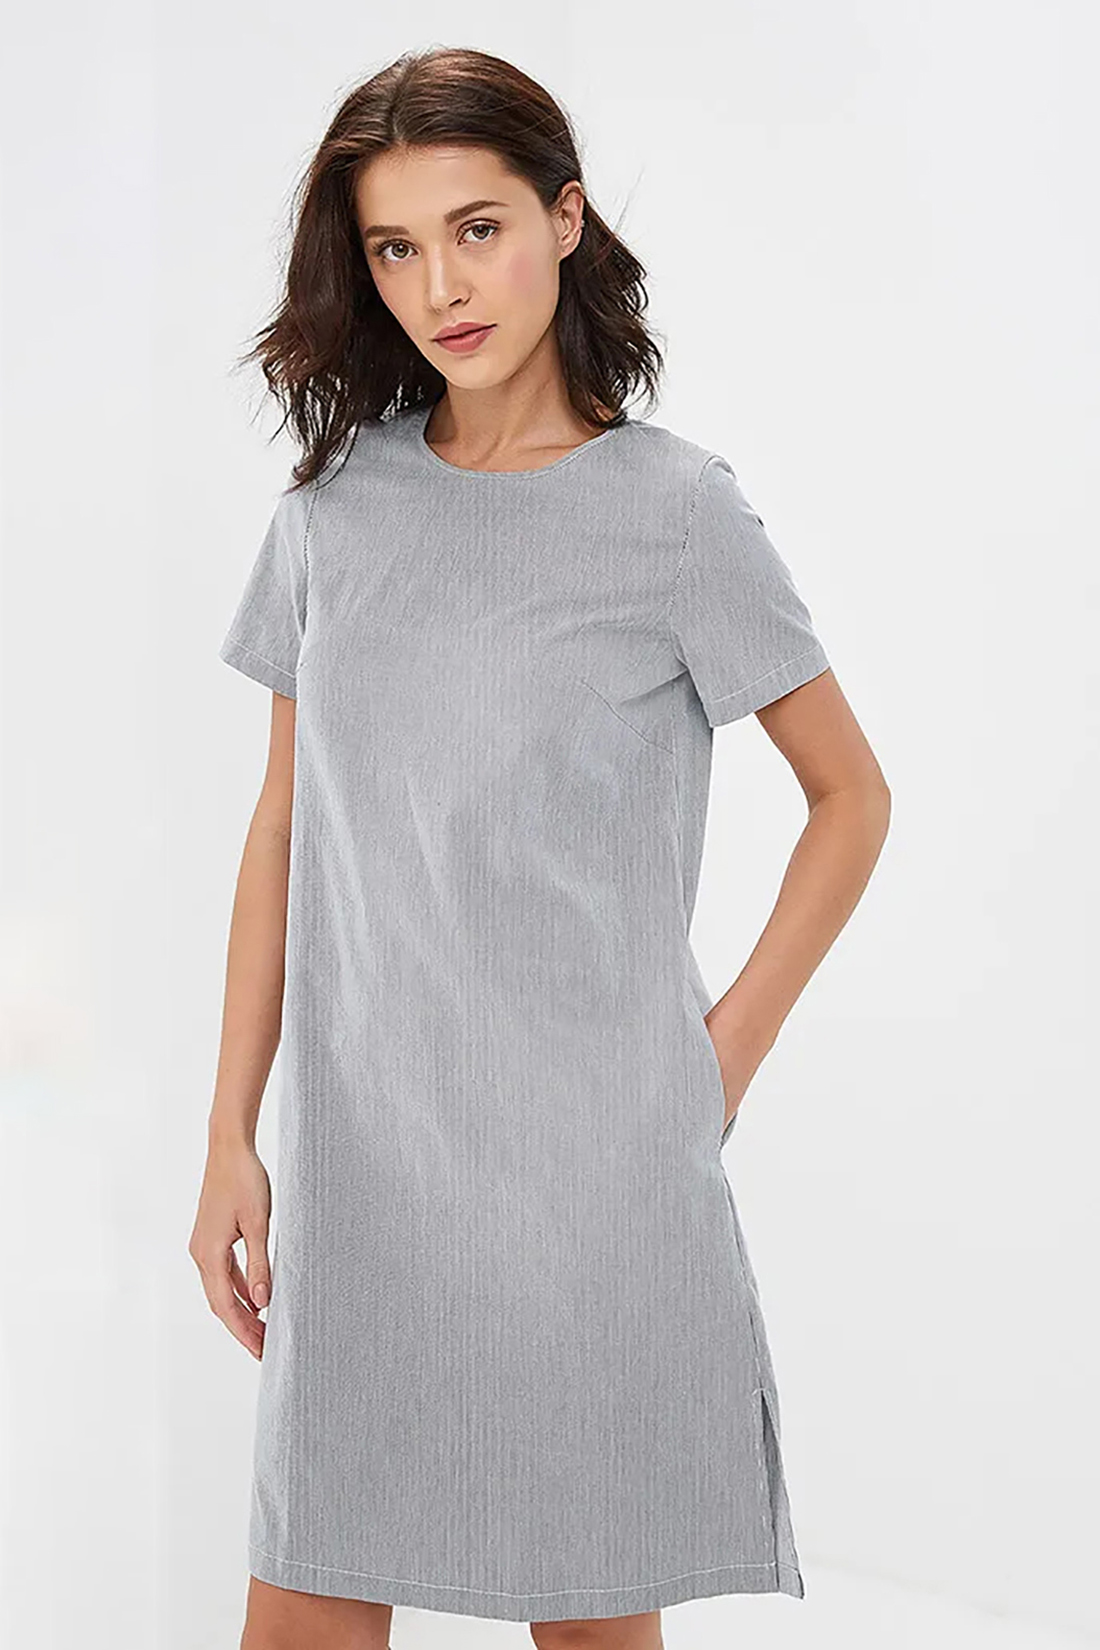 Прямое платье в тонкую полоску (арт. baon B459046), размер M, цвет серый Прямое платье в тонкую полоску (арт. baon B459046) - фото 3